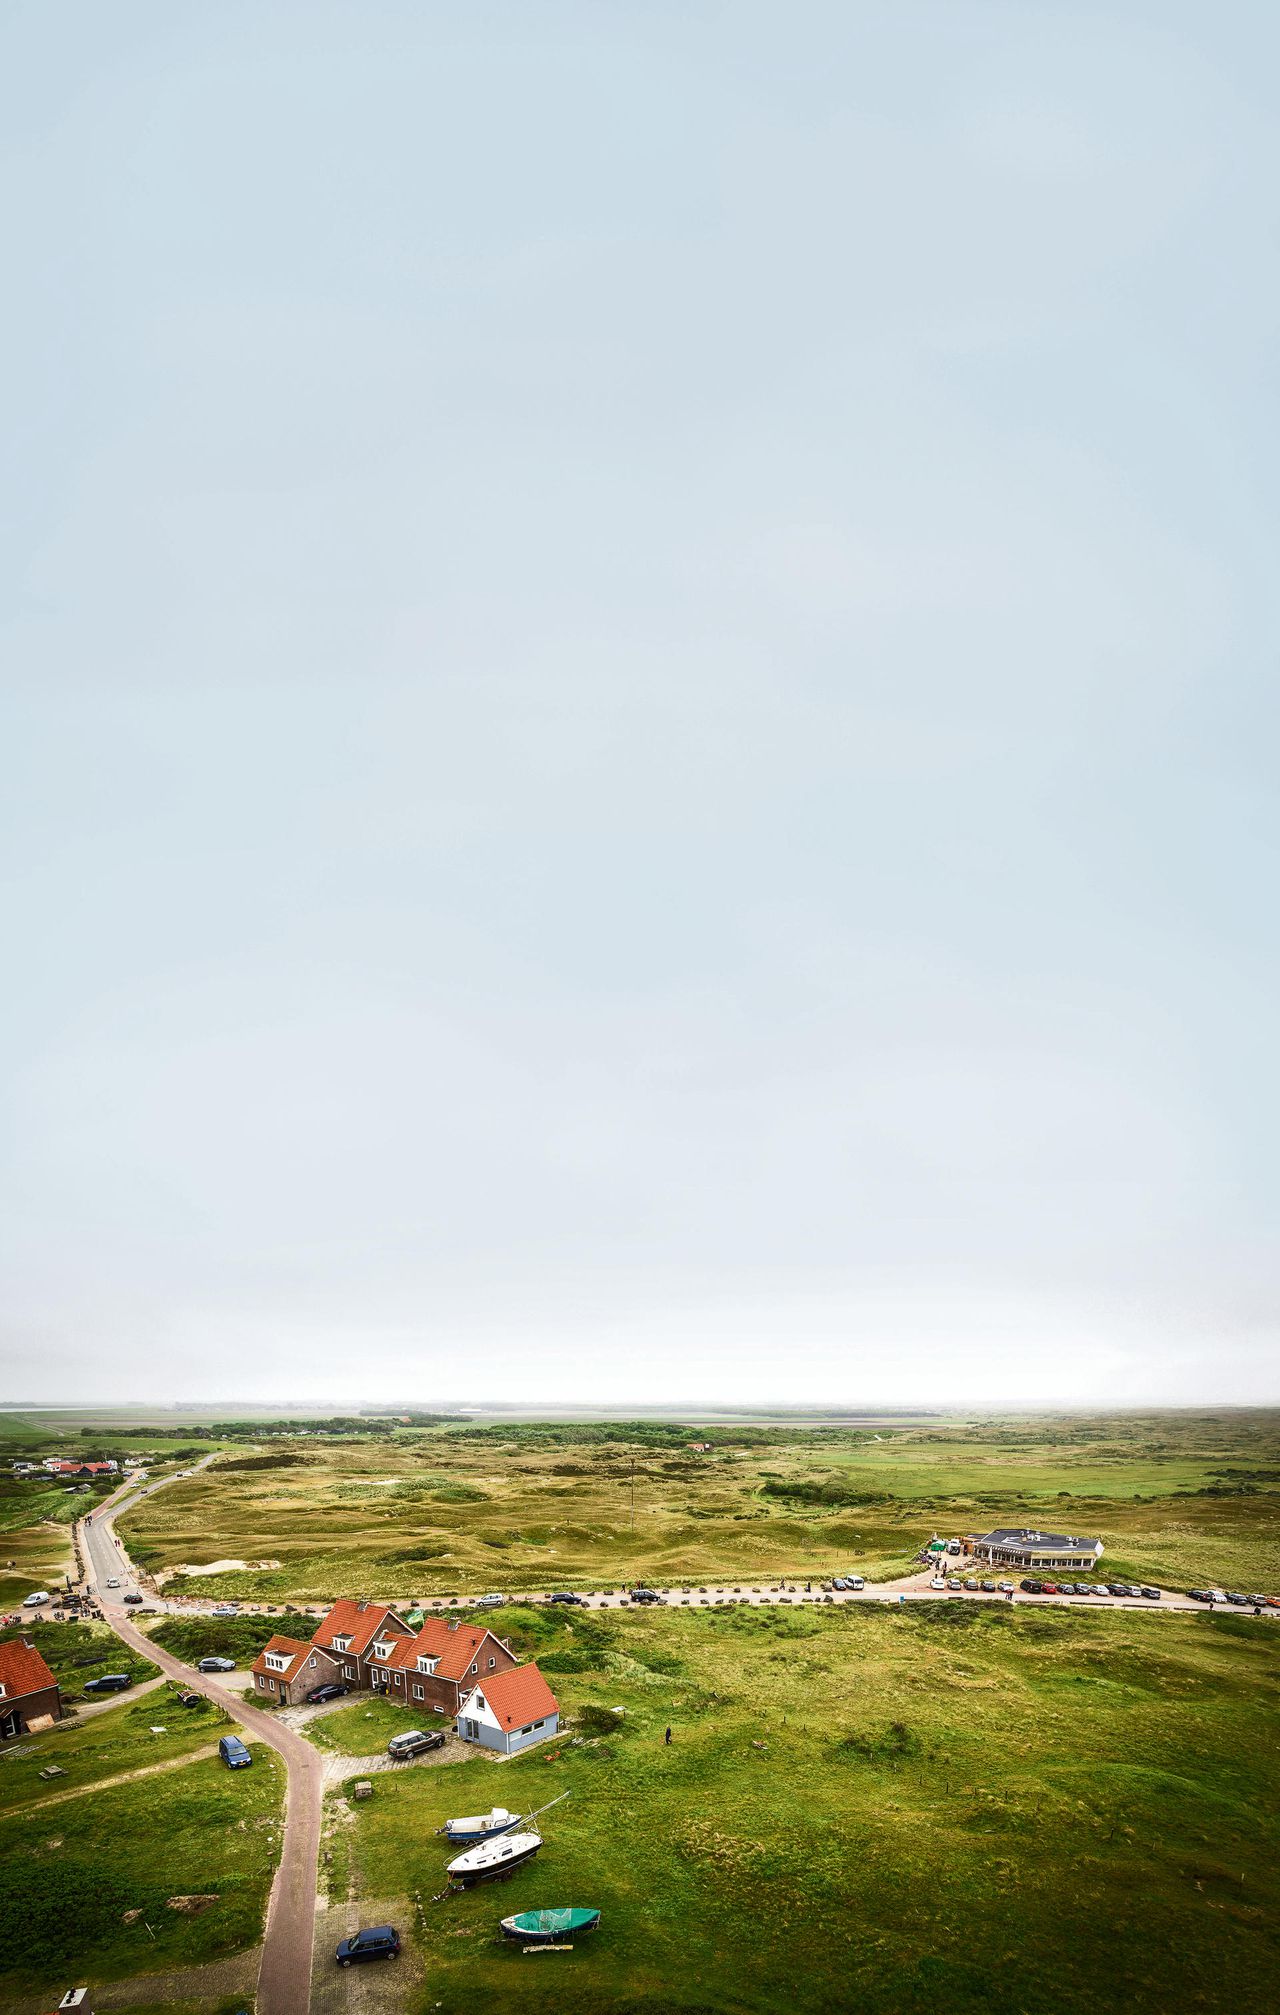 Texel staat op nummer 9 in de top 10 van Europese bestemmingen in 2016 volgens Lonely Planet. De vuurtoren is eenmust see.